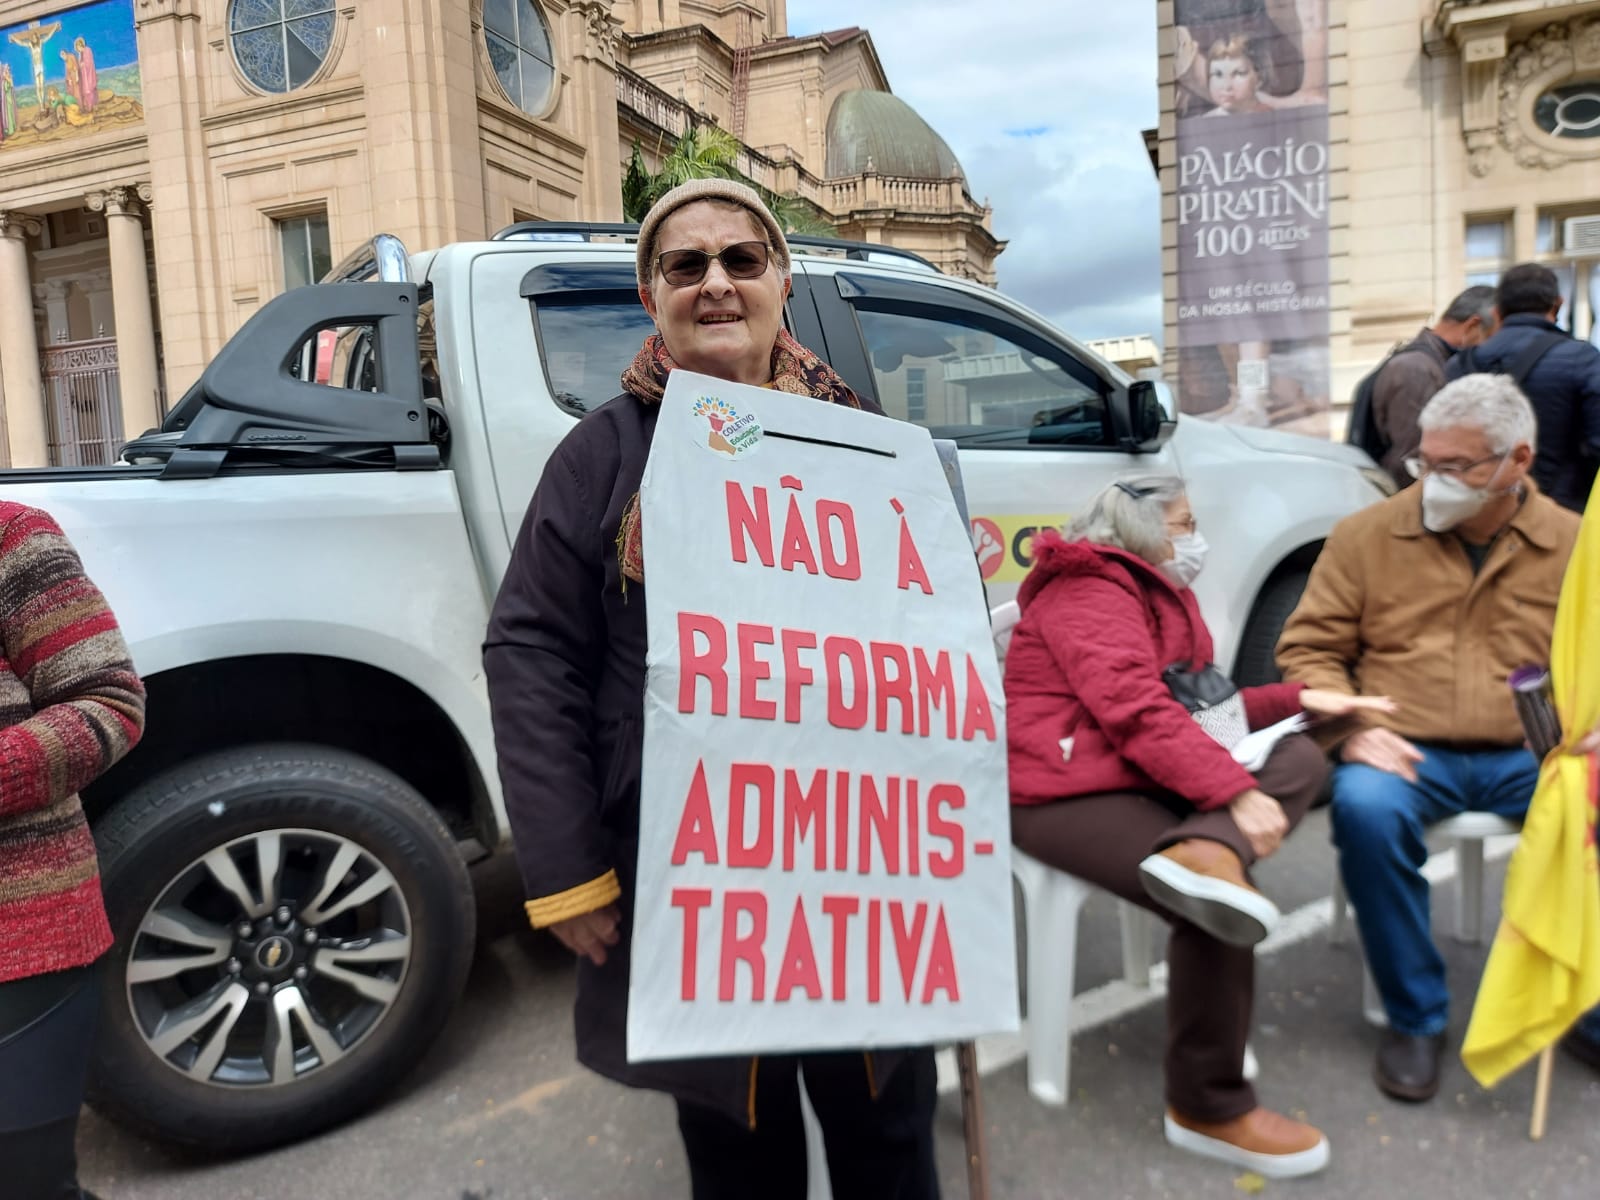 Professores estaduais protestam em frente ao Piratini por reposição salarial